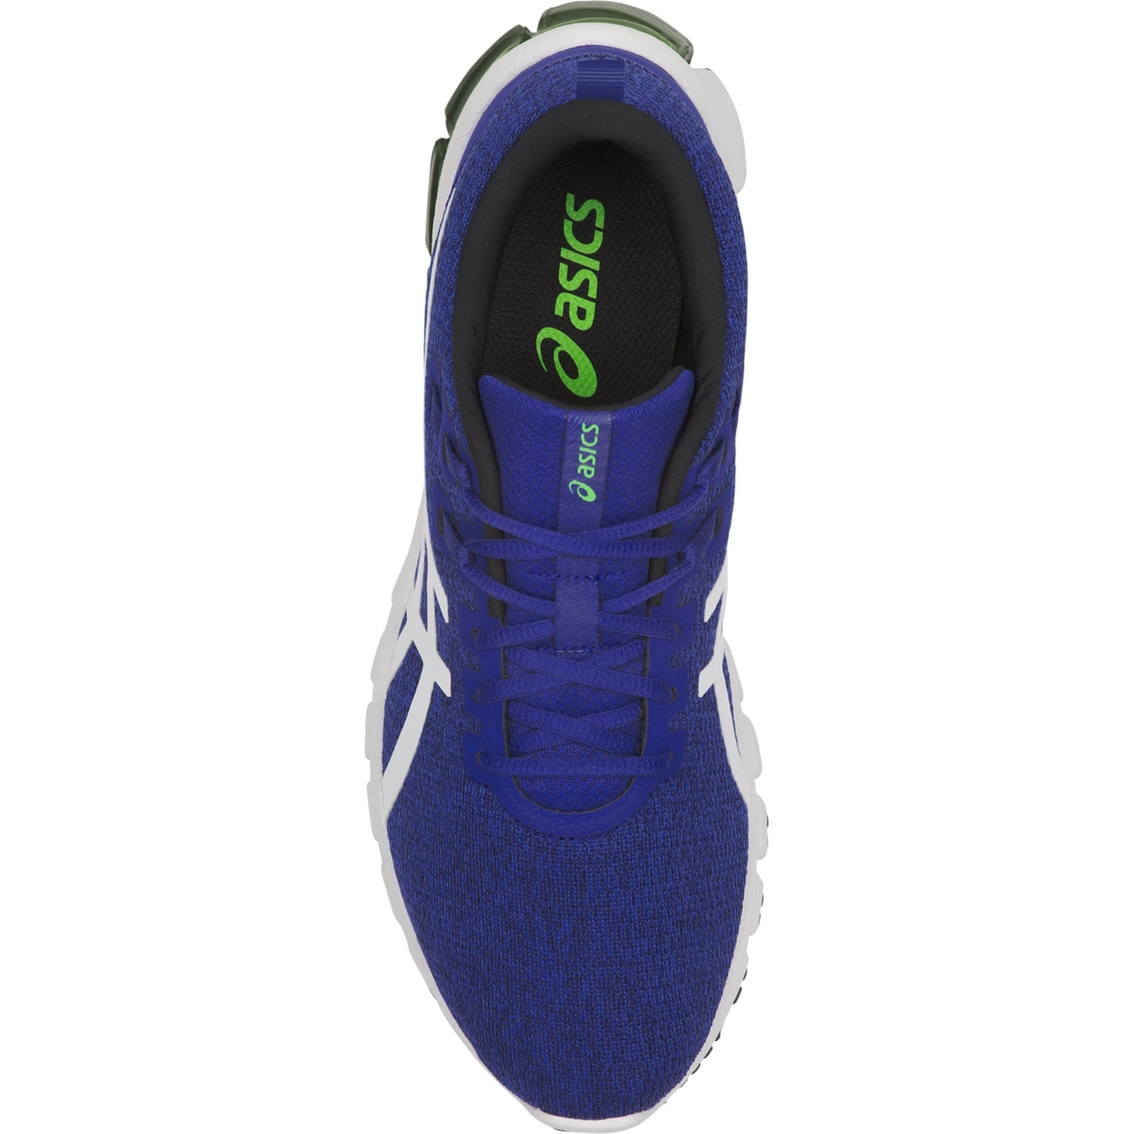 ASICS Men's GEL Quantum 90 Running Shoes - Image 3 of 4